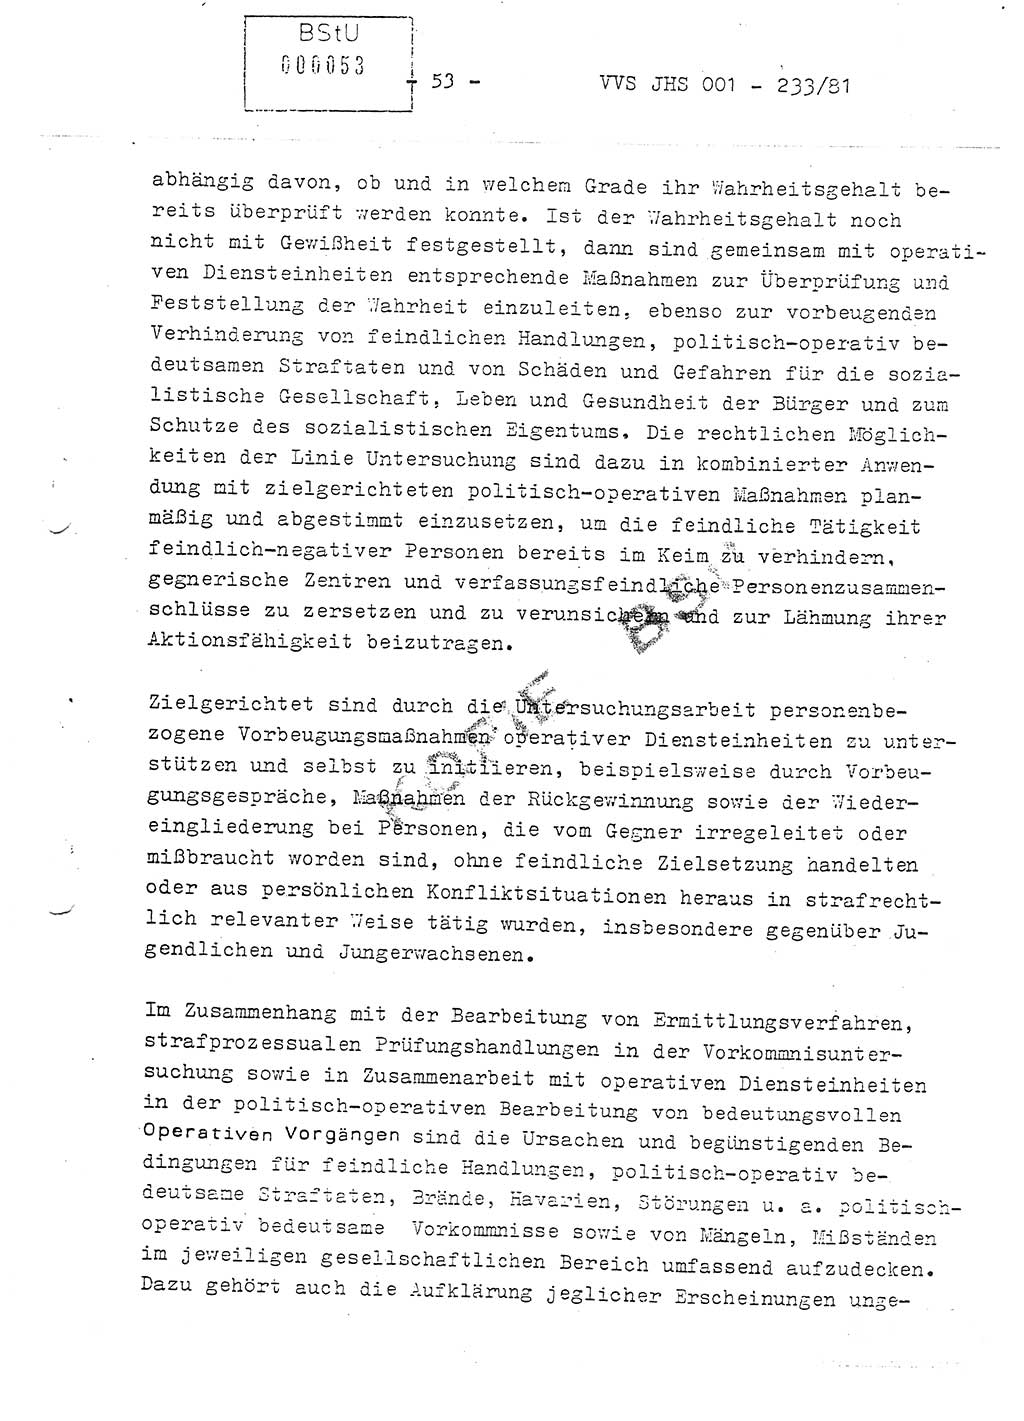 Dissertation Oberstleutnant Horst Zank (JHS), Oberstleutnant Dr. Karl-Heinz Knoblauch (JHS), Oberstleutnant Gustav-Adolf Kowalewski (HA Ⅸ), Oberstleutnant Wolfgang Plötner (HA Ⅸ), Ministerium für Staatssicherheit (MfS) [Deutsche Demokratische Republik (DDR)], Juristische Hochschule (JHS), Vertrauliche Verschlußsache (VVS) o001-233/81, Potsdam 1981, Blatt 53 (Diss. MfS DDR JHS VVS o001-233/81 1981, Bl. 53)